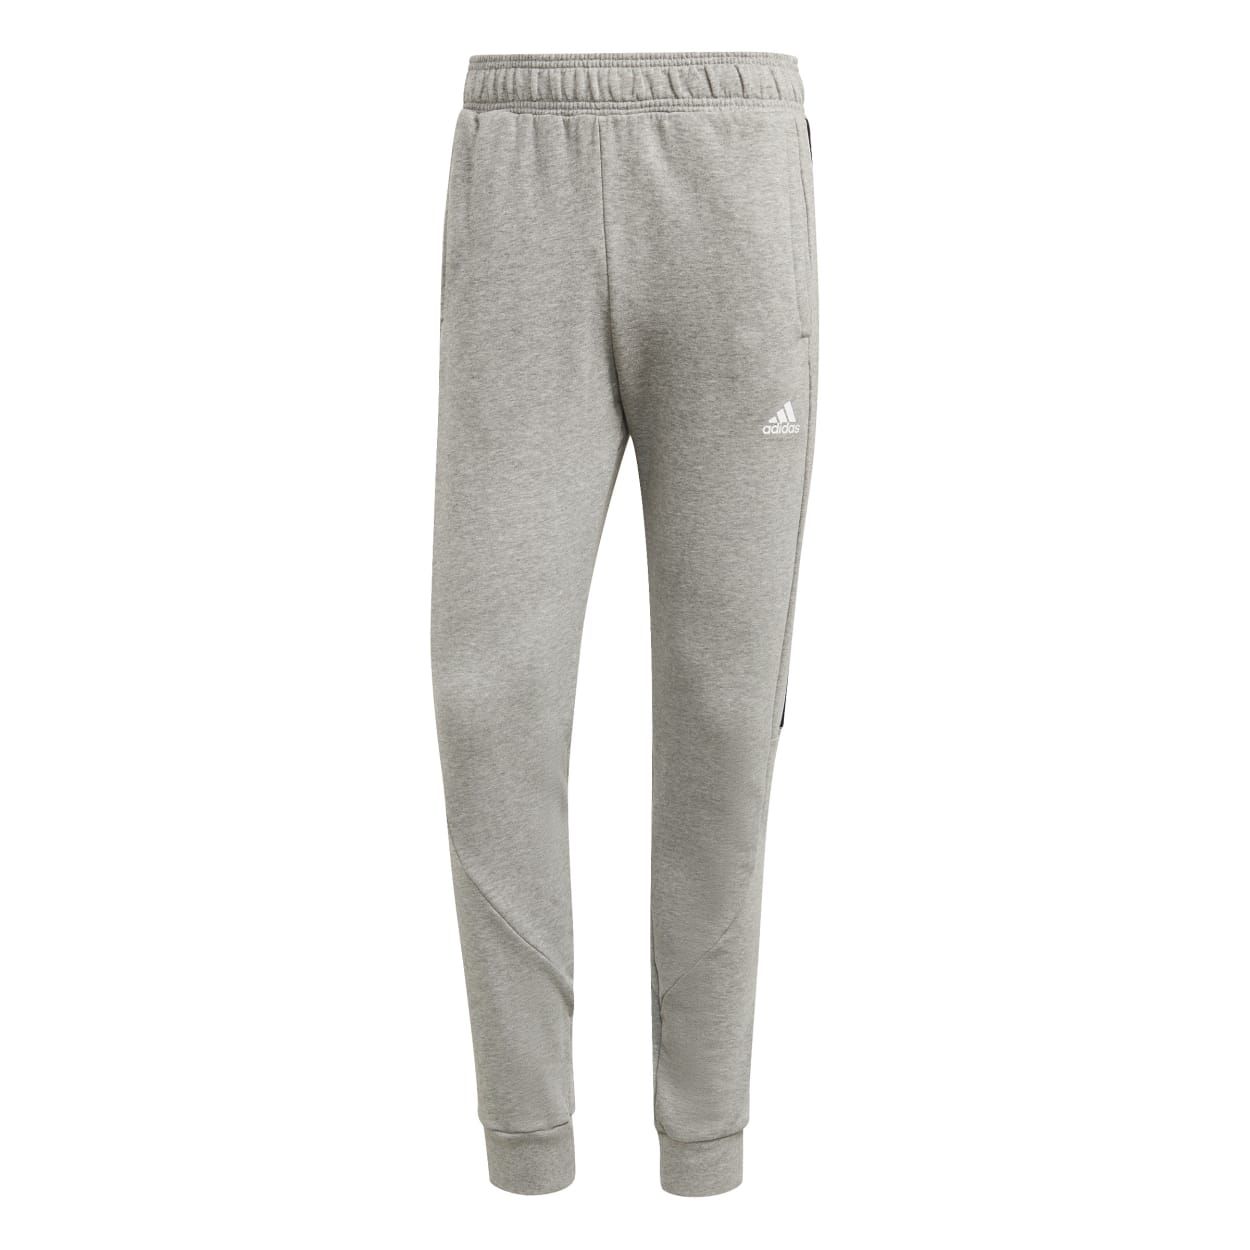 Adidas M BL PT, moške hlače, siva | Intersport